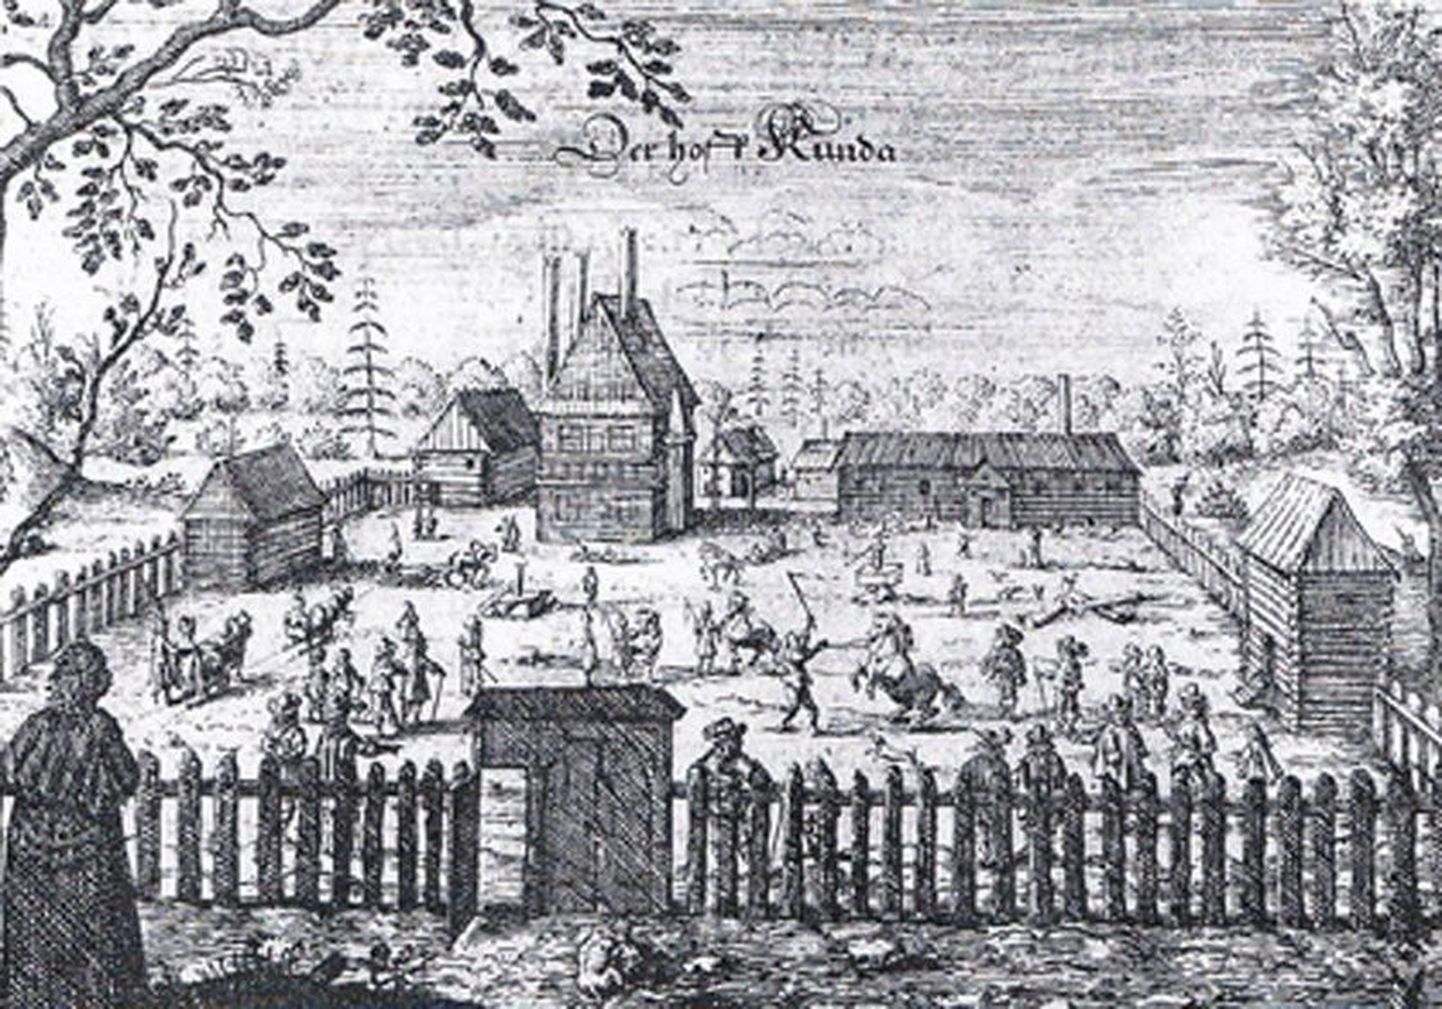 Pilt Kunda mõisast, nagu seda nägi Adam Olearius, 1647. a ilmunud raamatus.